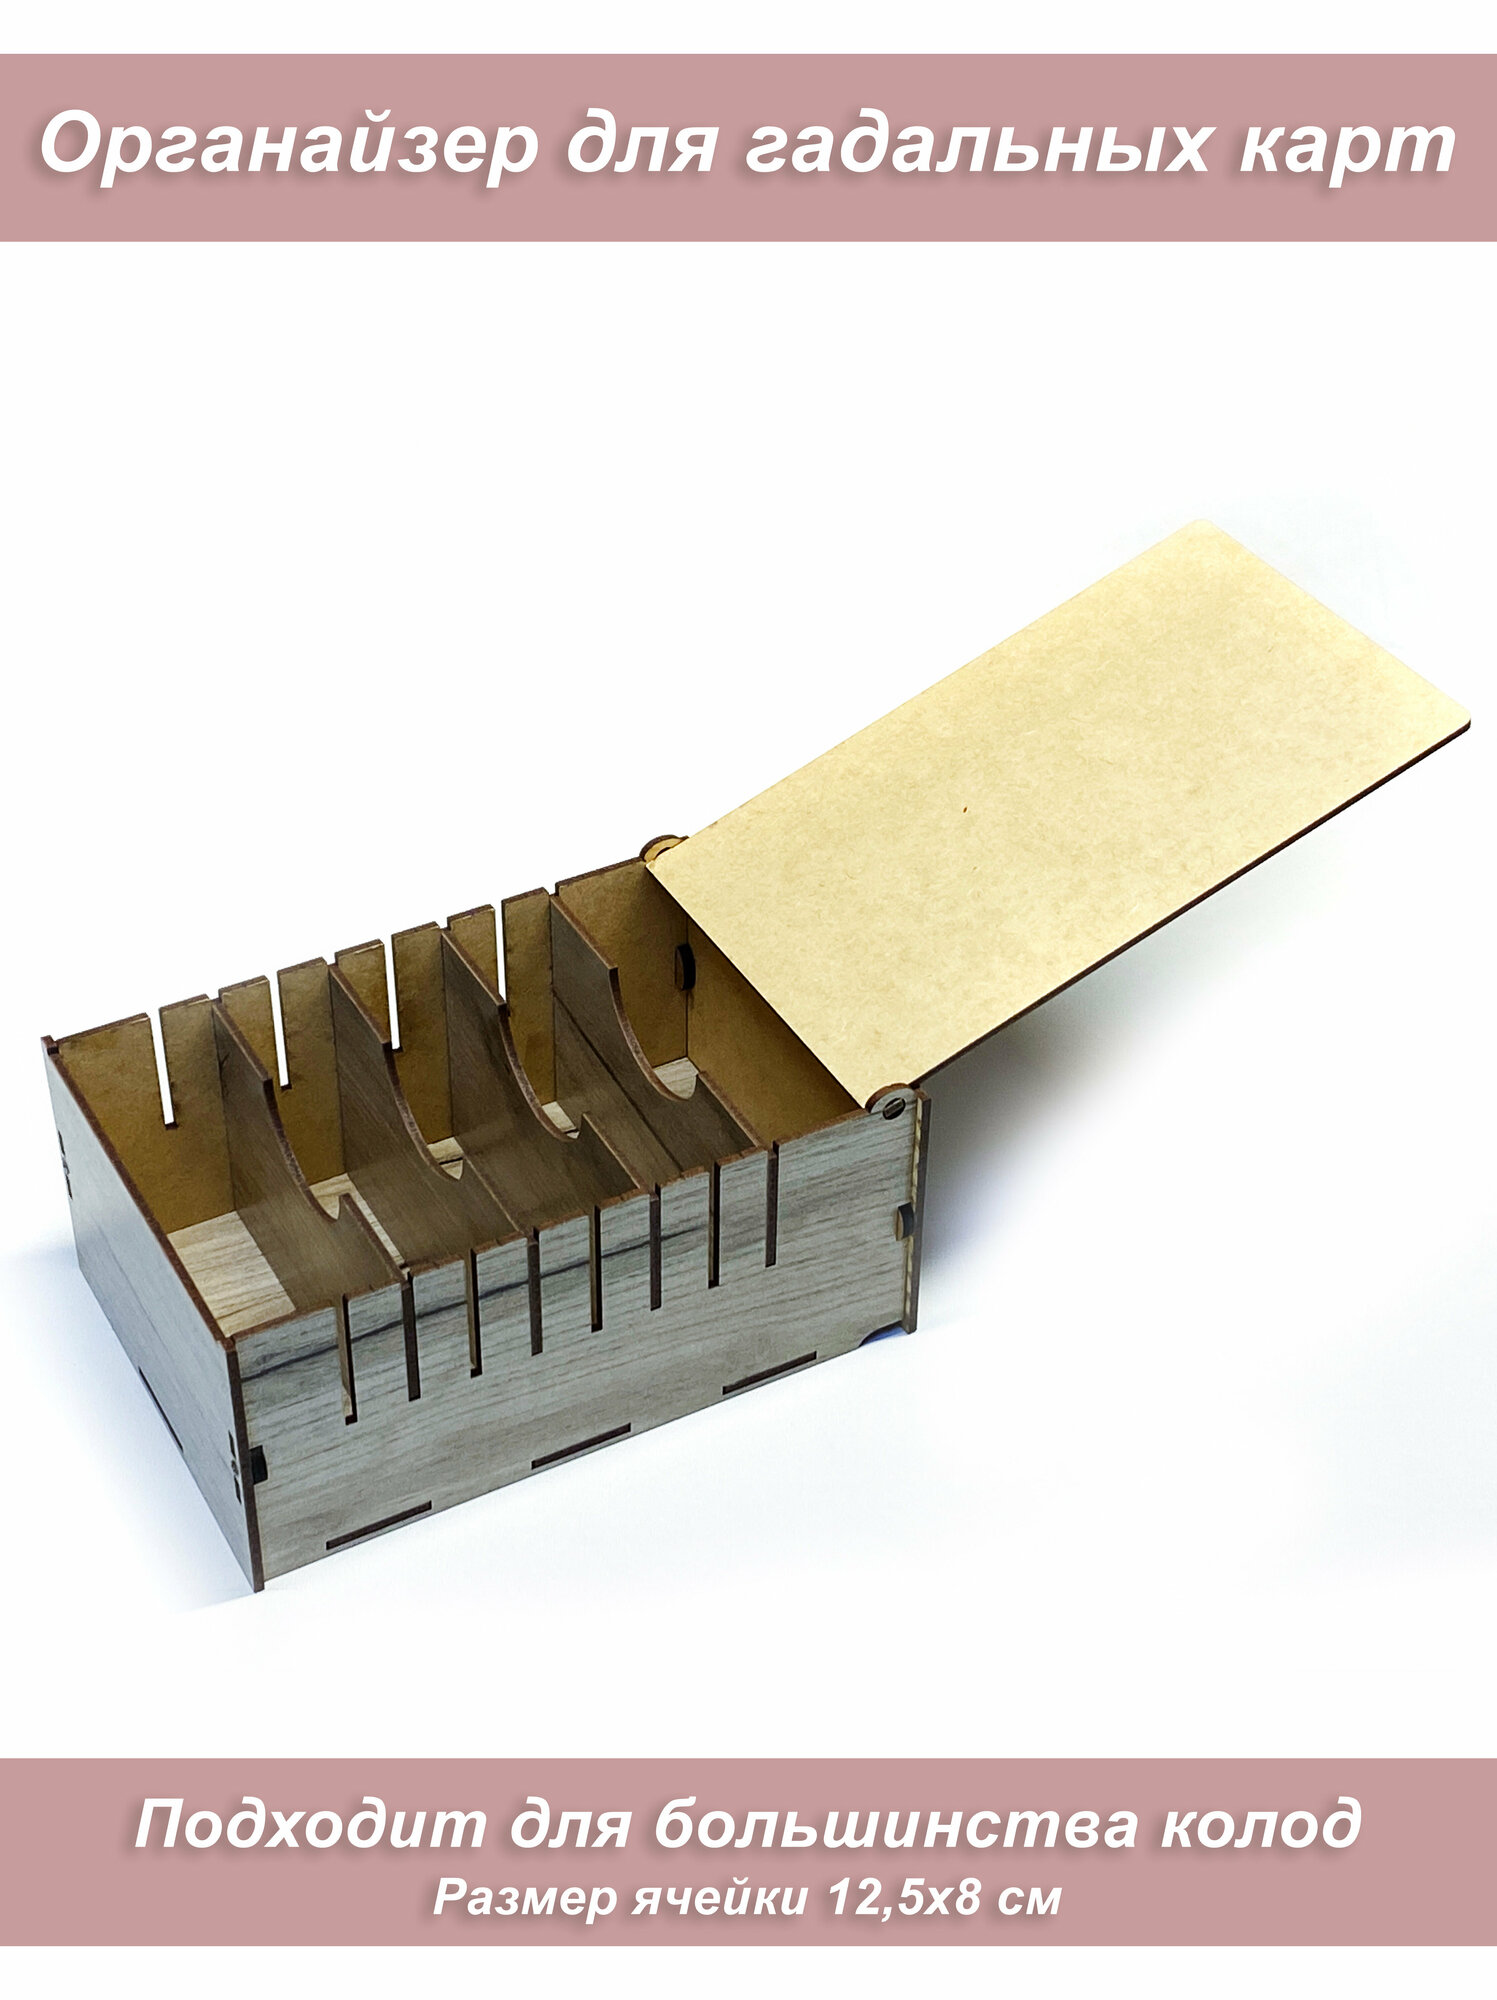 Коробка, органайзер для хранения гадальных карт Таро